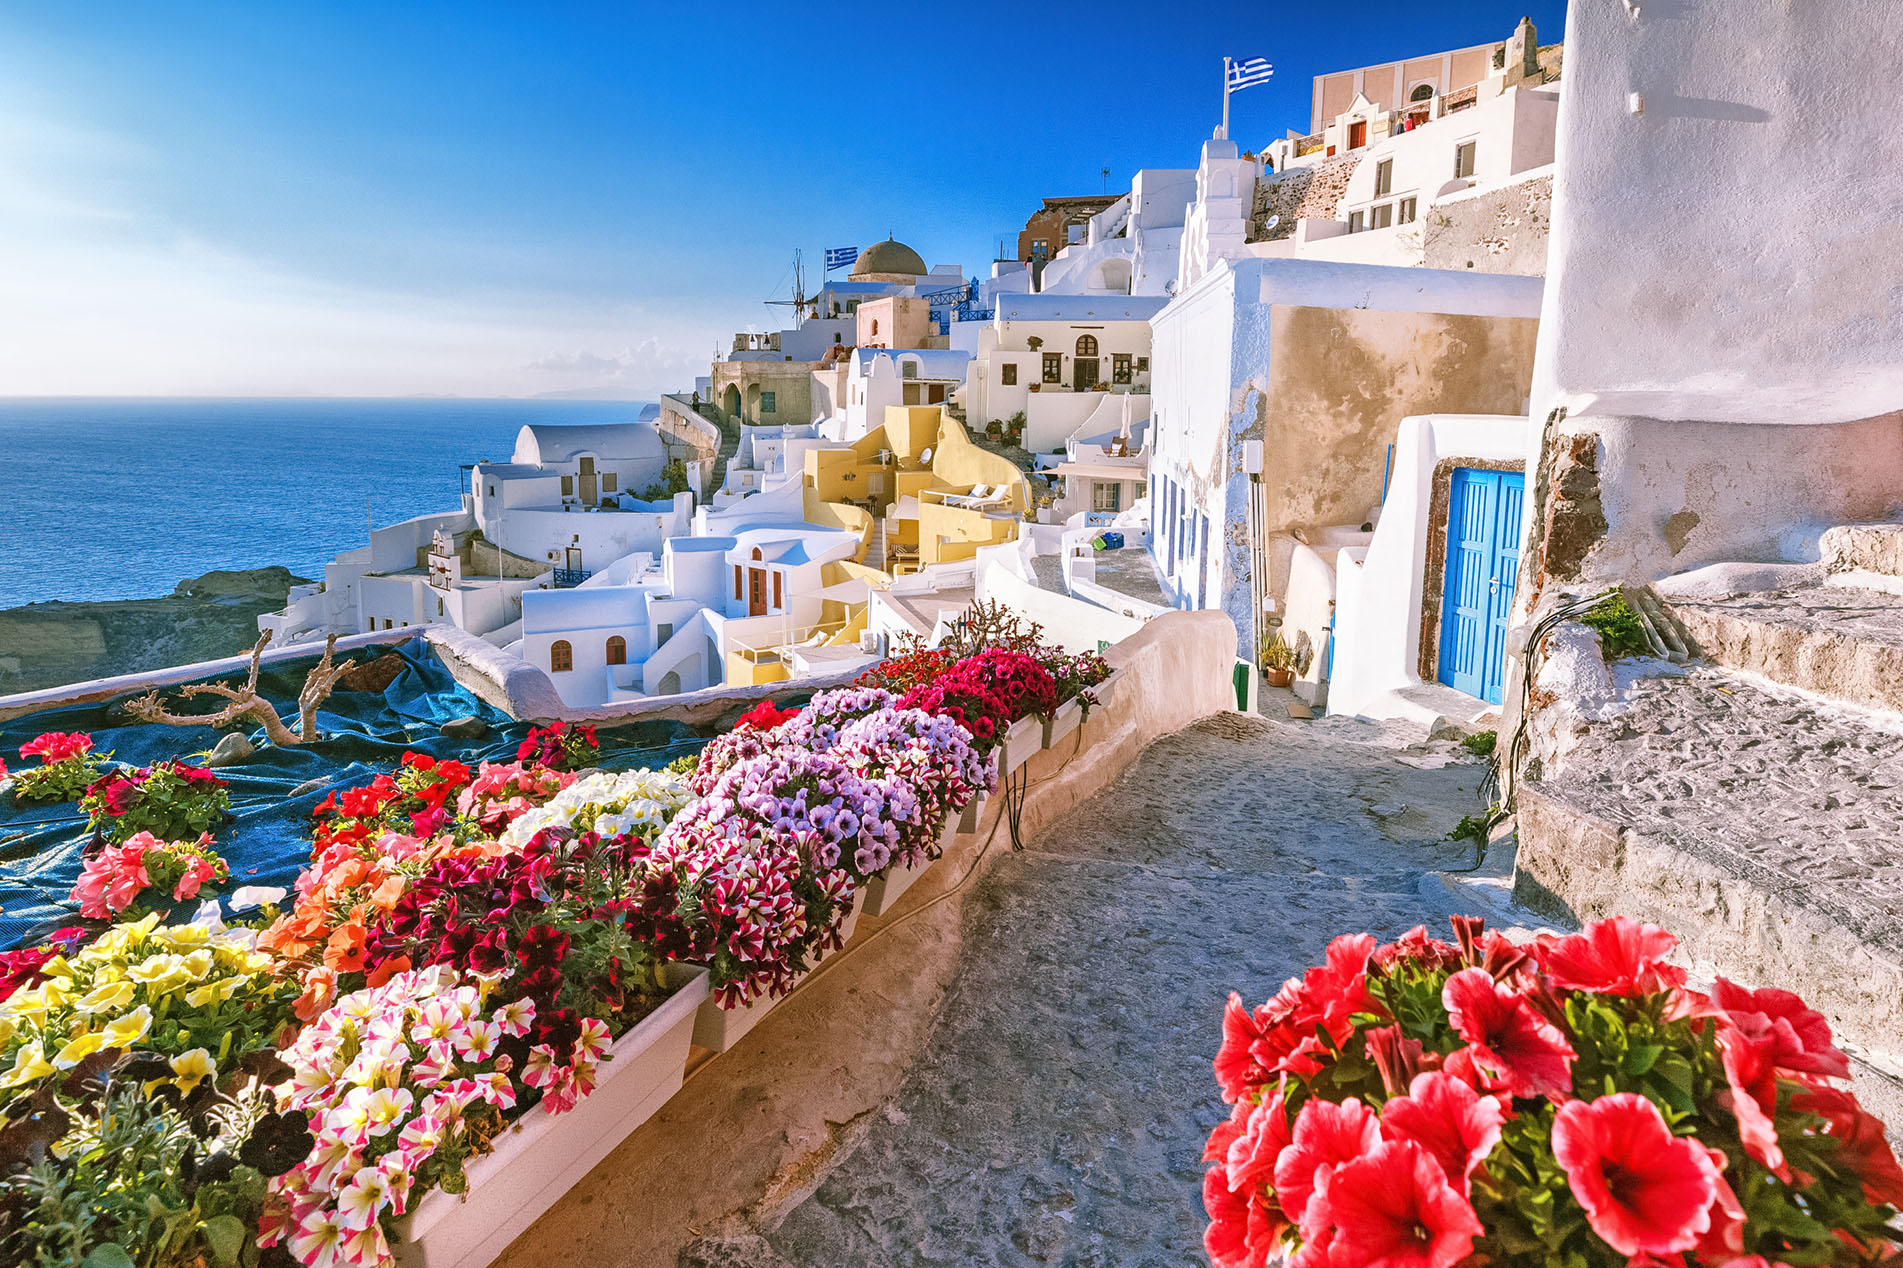 Tour-Crete trip | Greece 1 Santorini to | day – Excursions Crete, Seajets with VIP